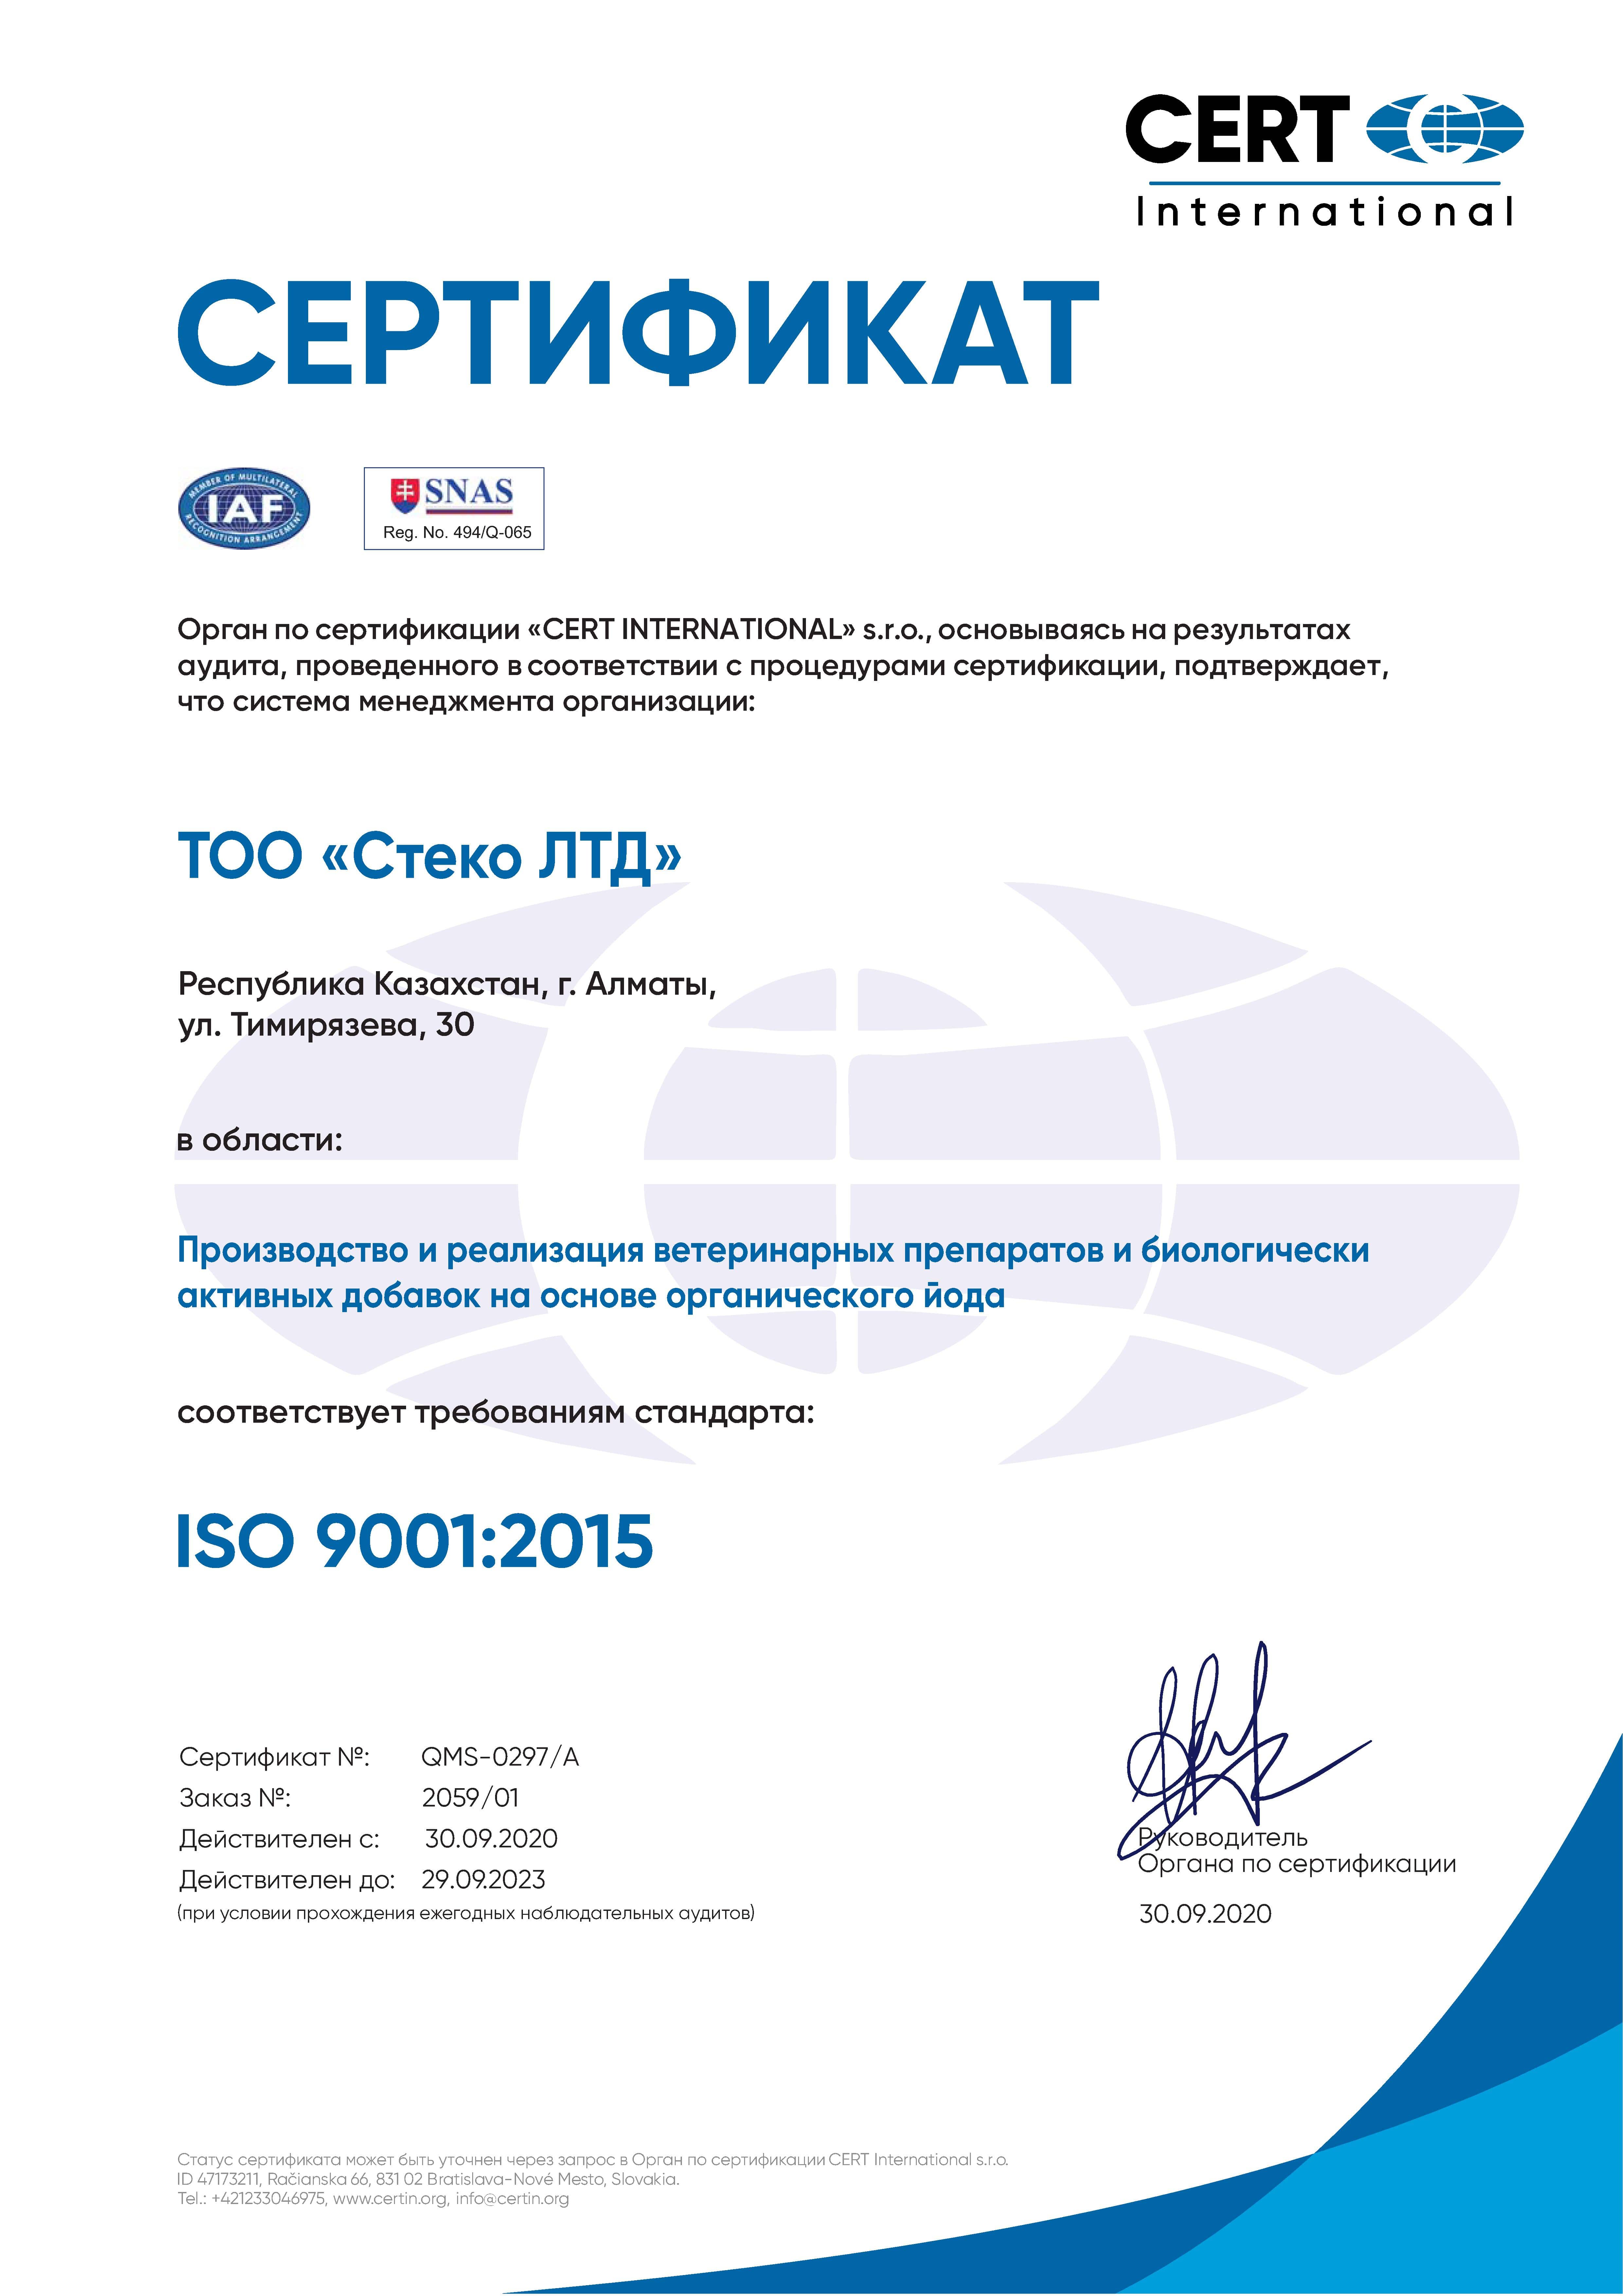 Сертификат CERT INTERNATIONAL ISO 9001:2015 для продукции СТЕКО ЛТД